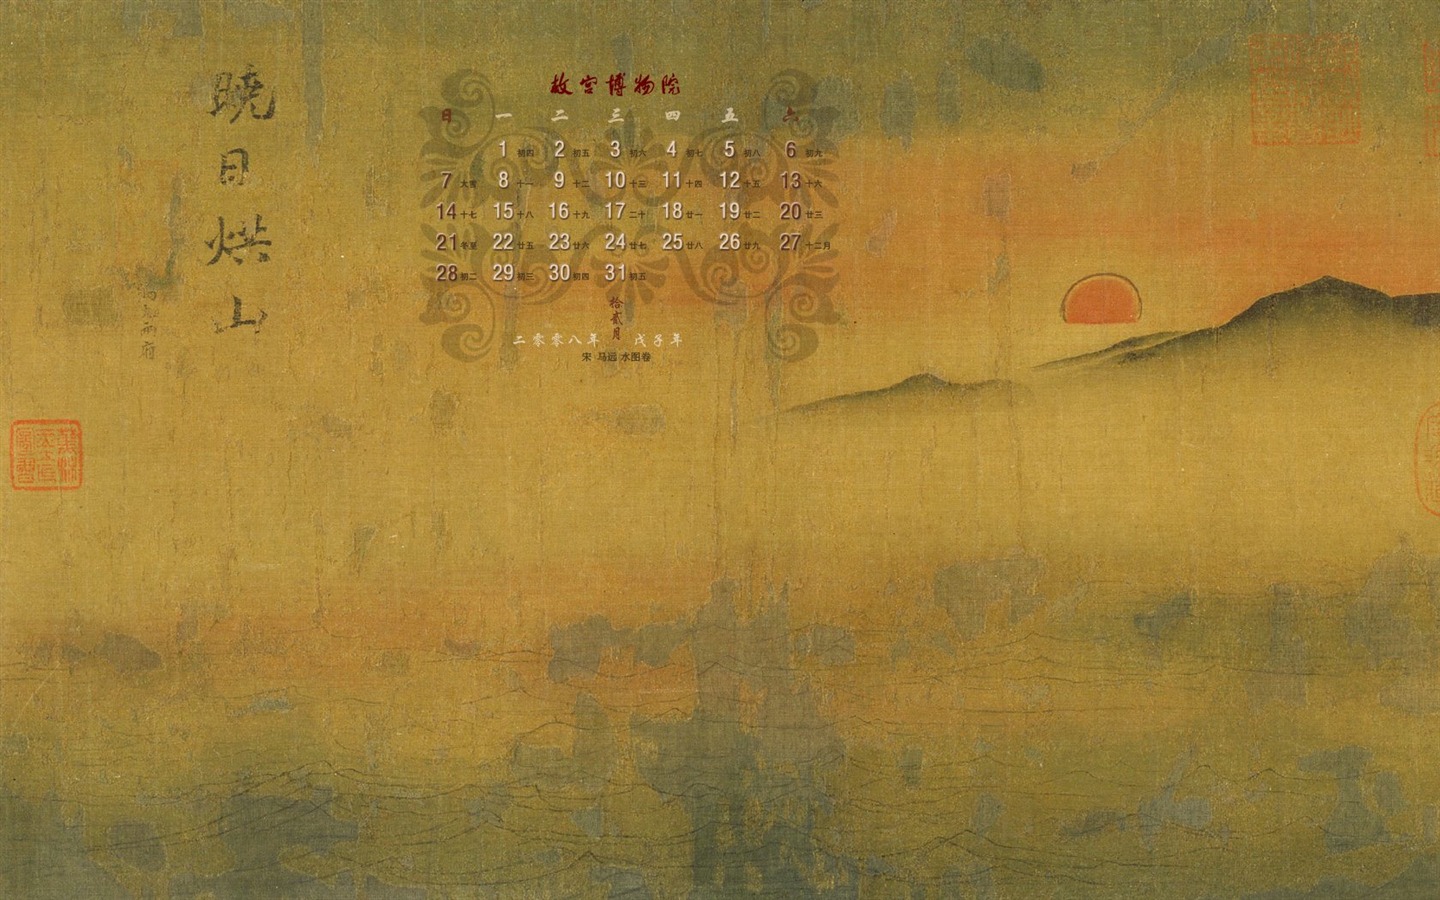 北京故宮博物院 文物展壁紙(二) #27 - 1440x900